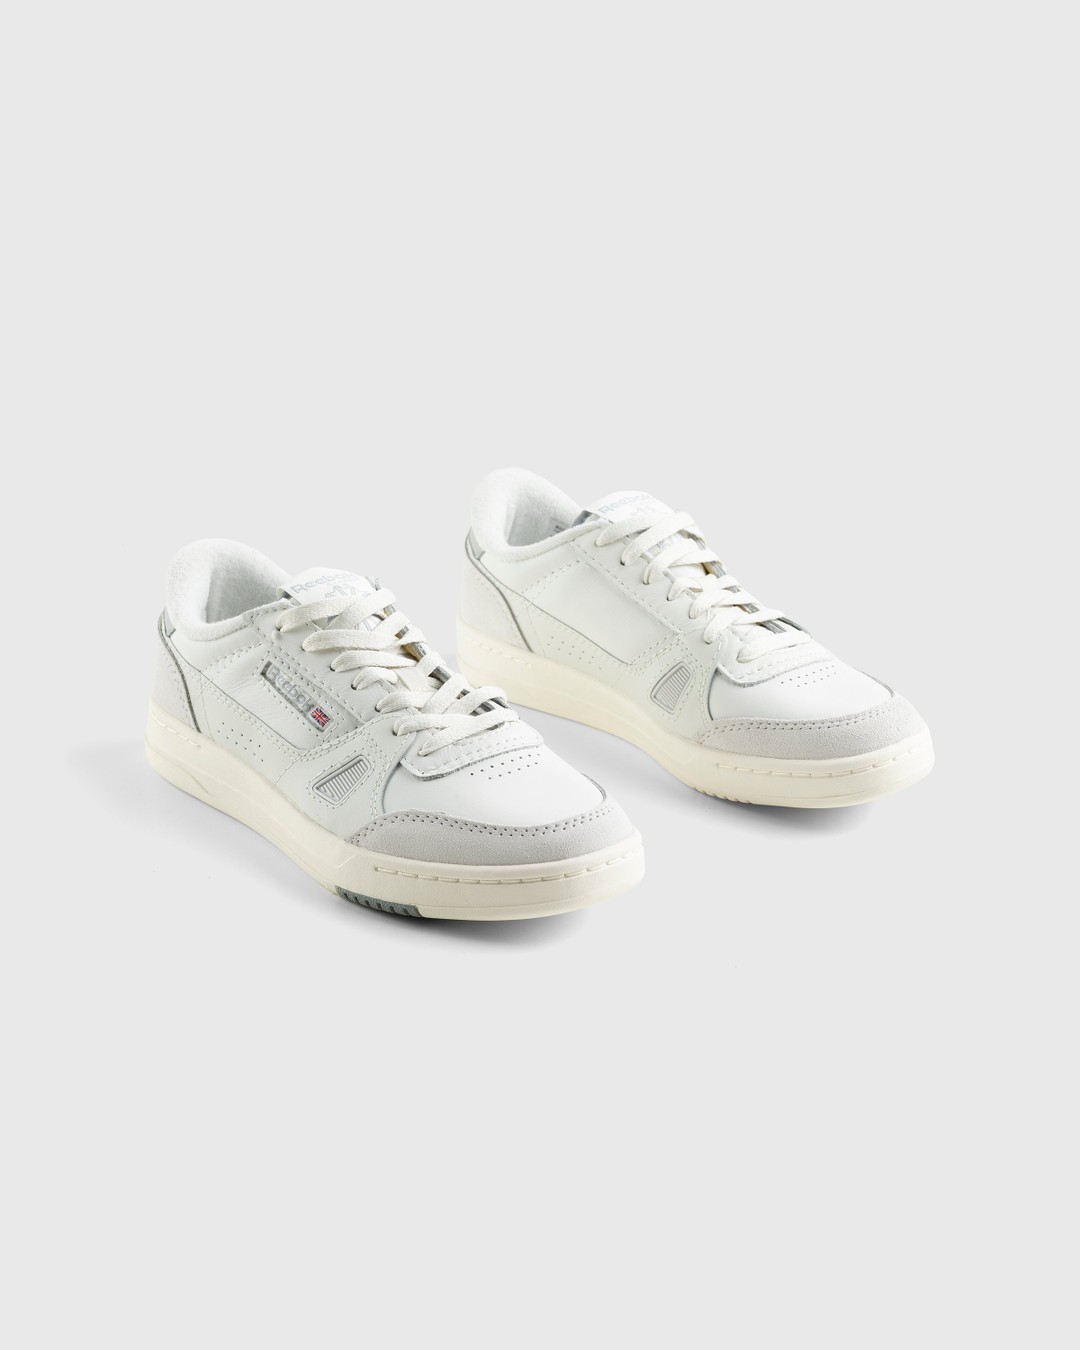 Reebok – LT Court Beige - Low Top Sneakers - Grey - Image 3